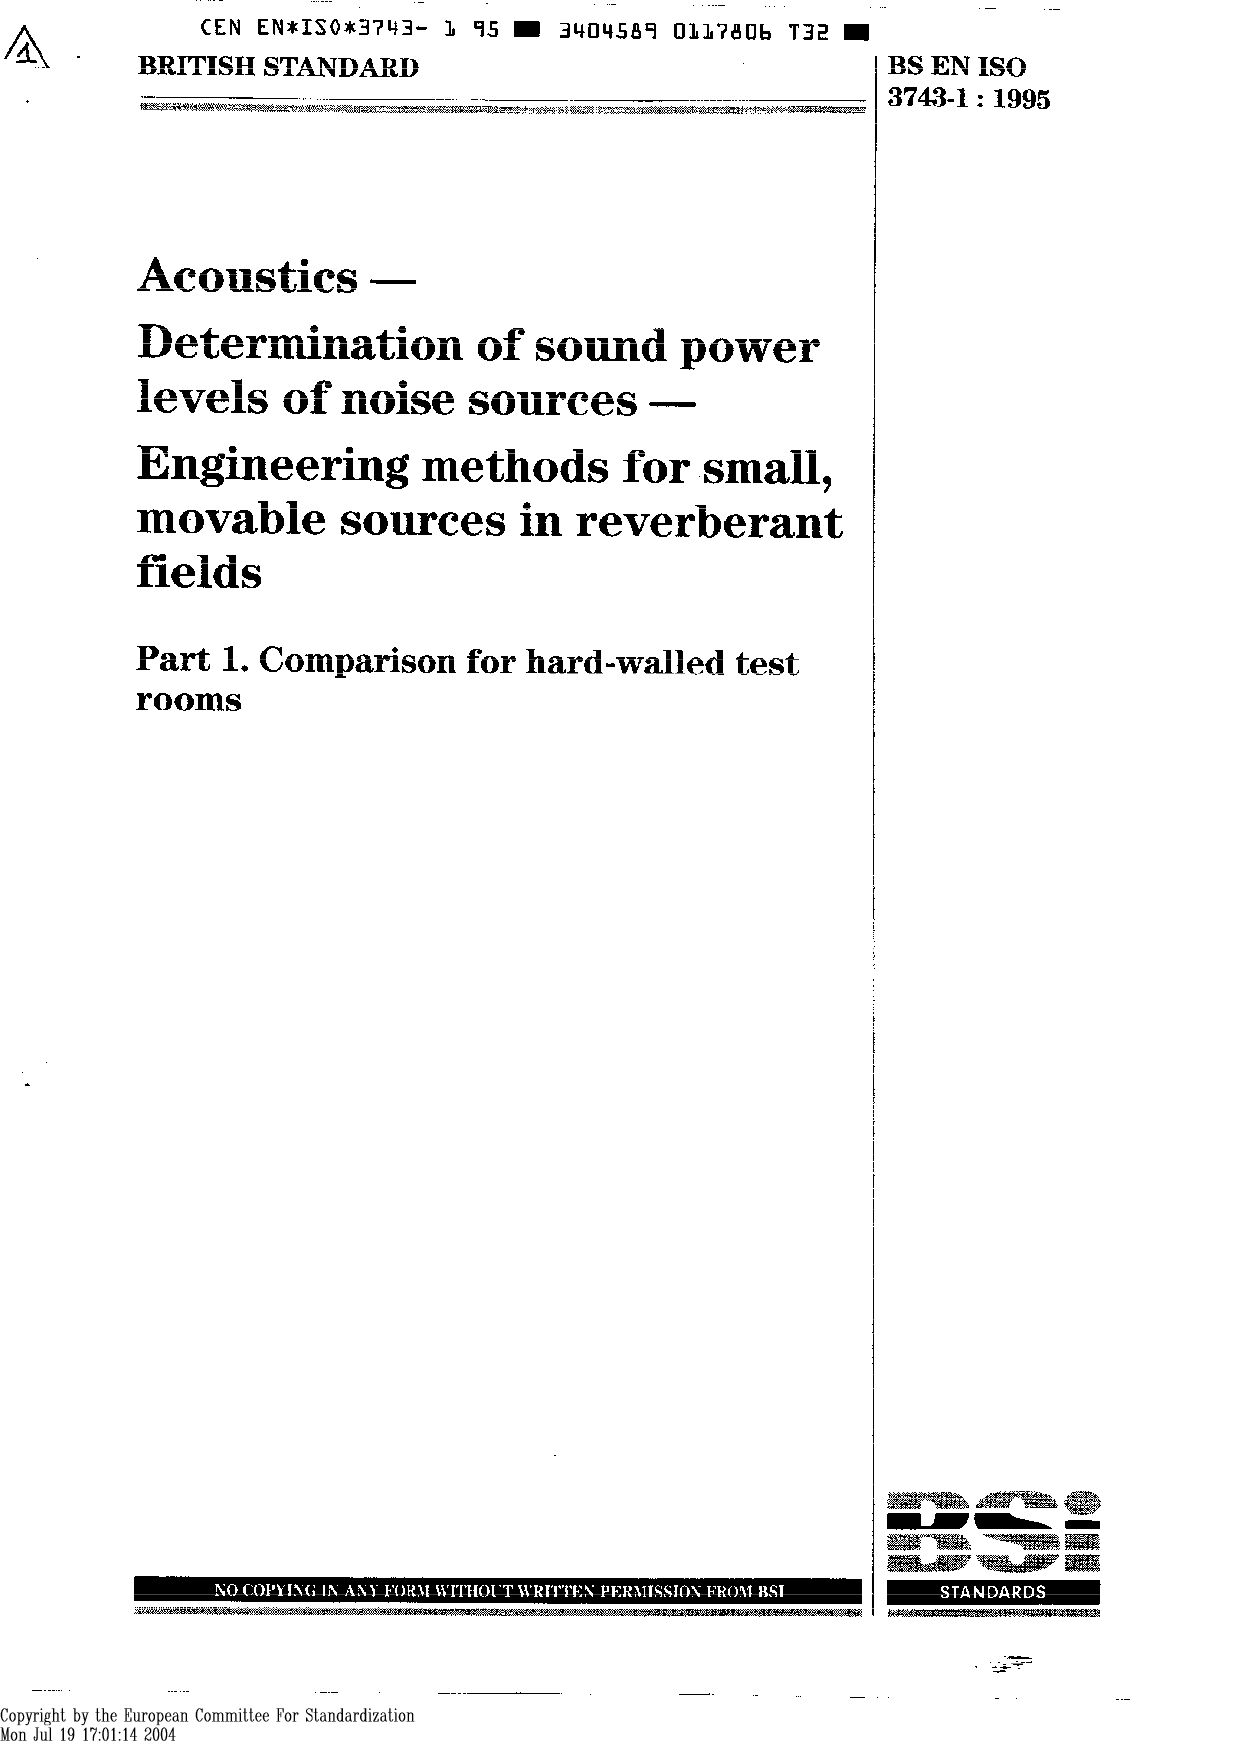 EN ISO 3743-1:1995封面图